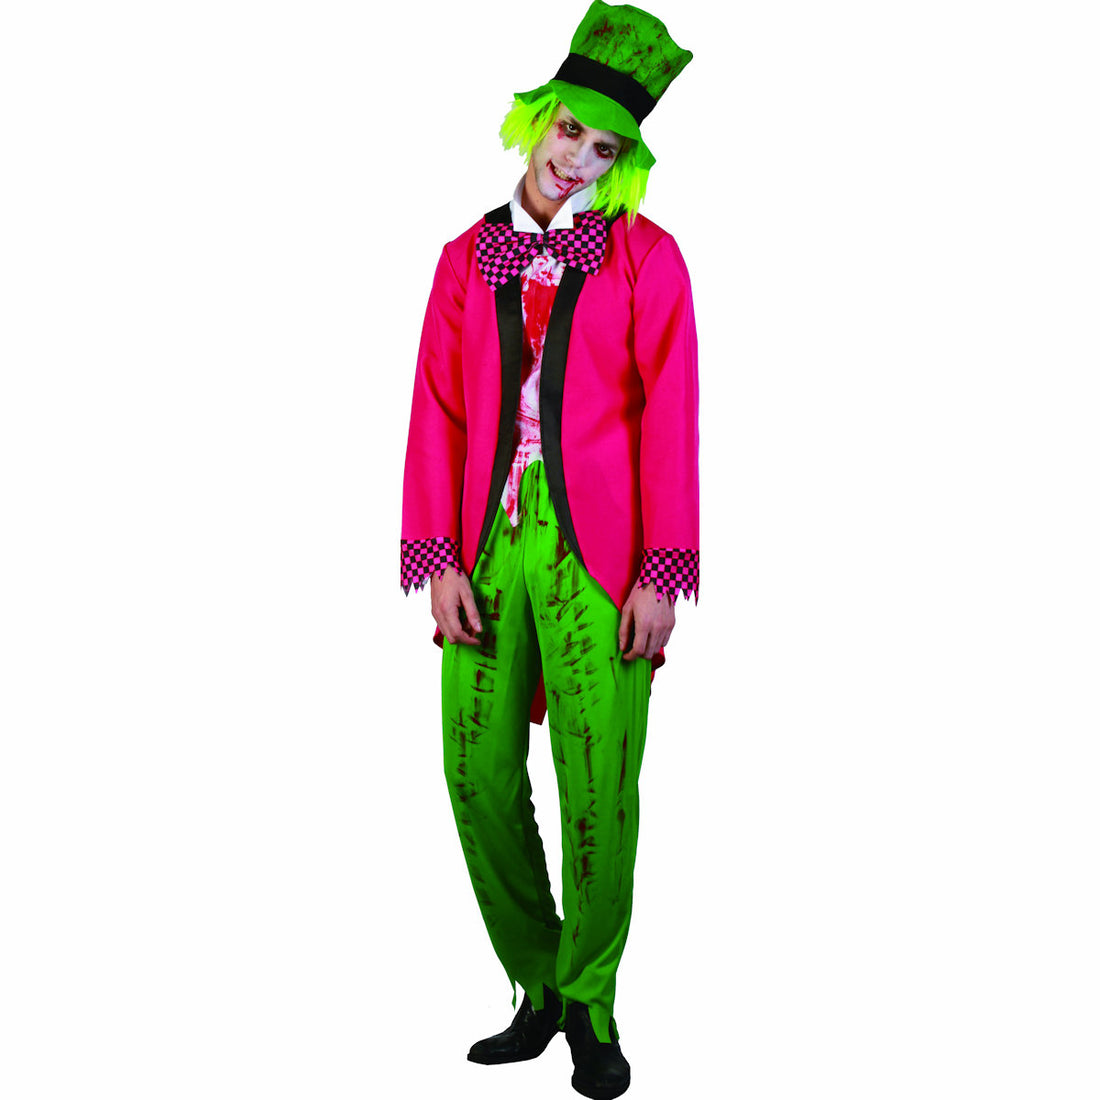 Jilted Jester Clown Men's Costume Fun Halloween Fancy Dress Costume ...